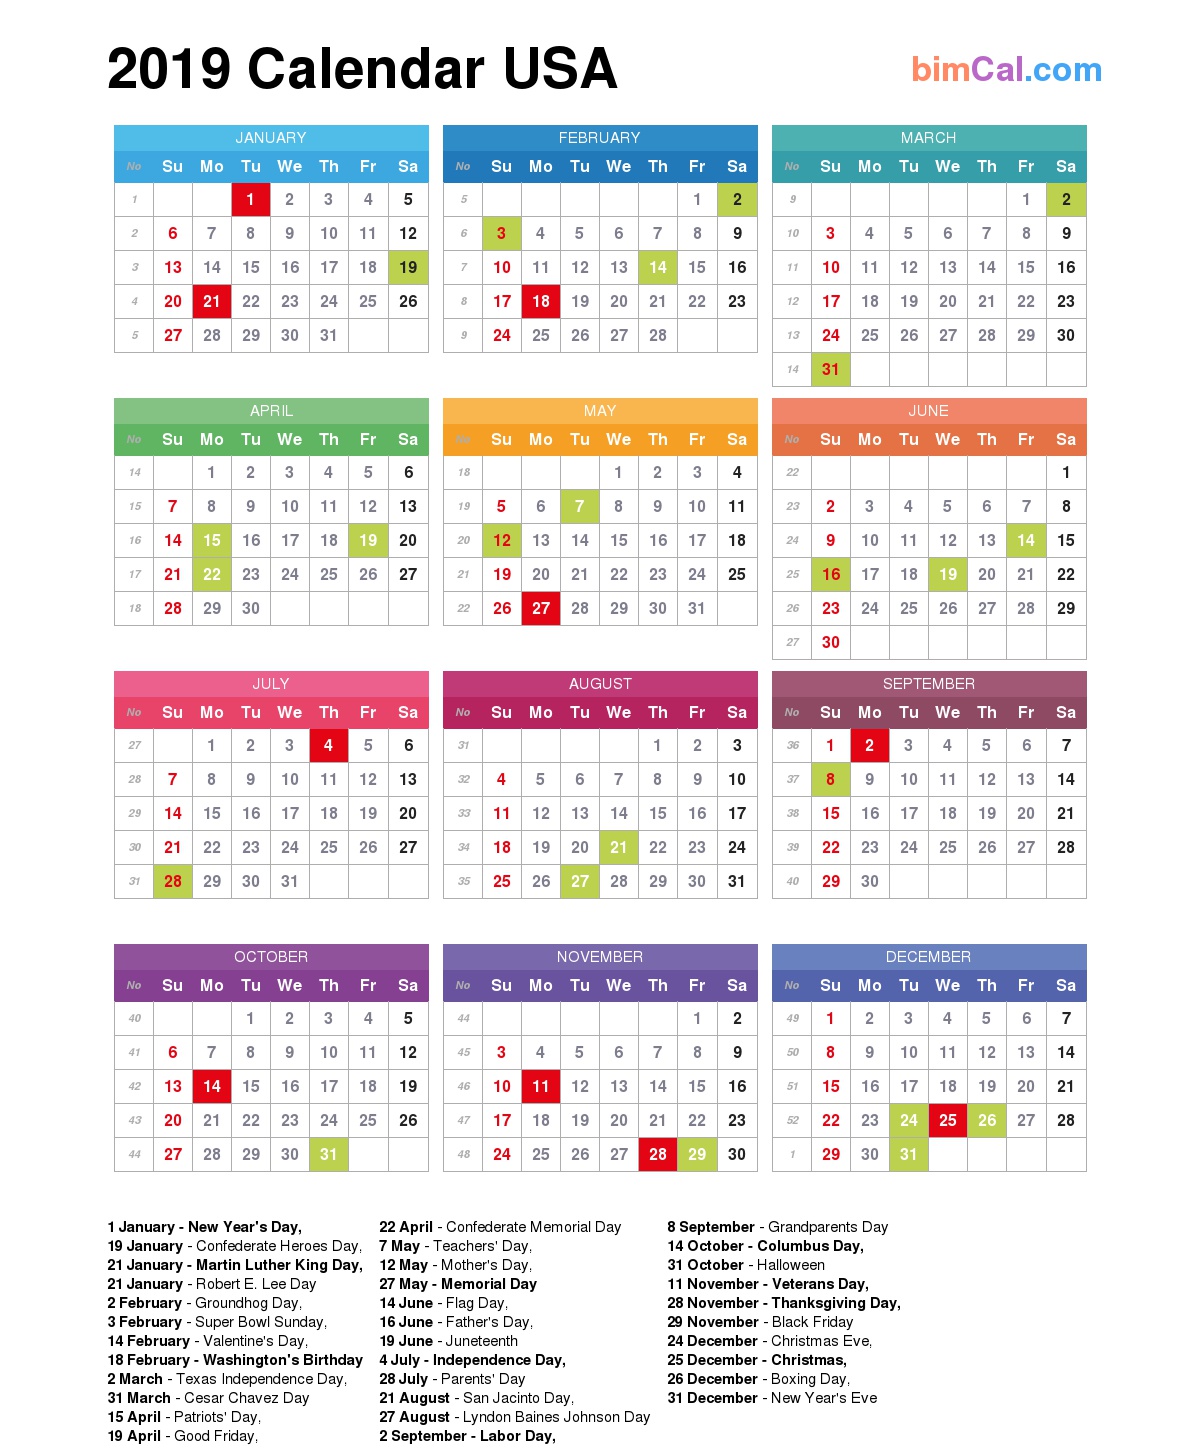 2019 Calendar USA bimCal